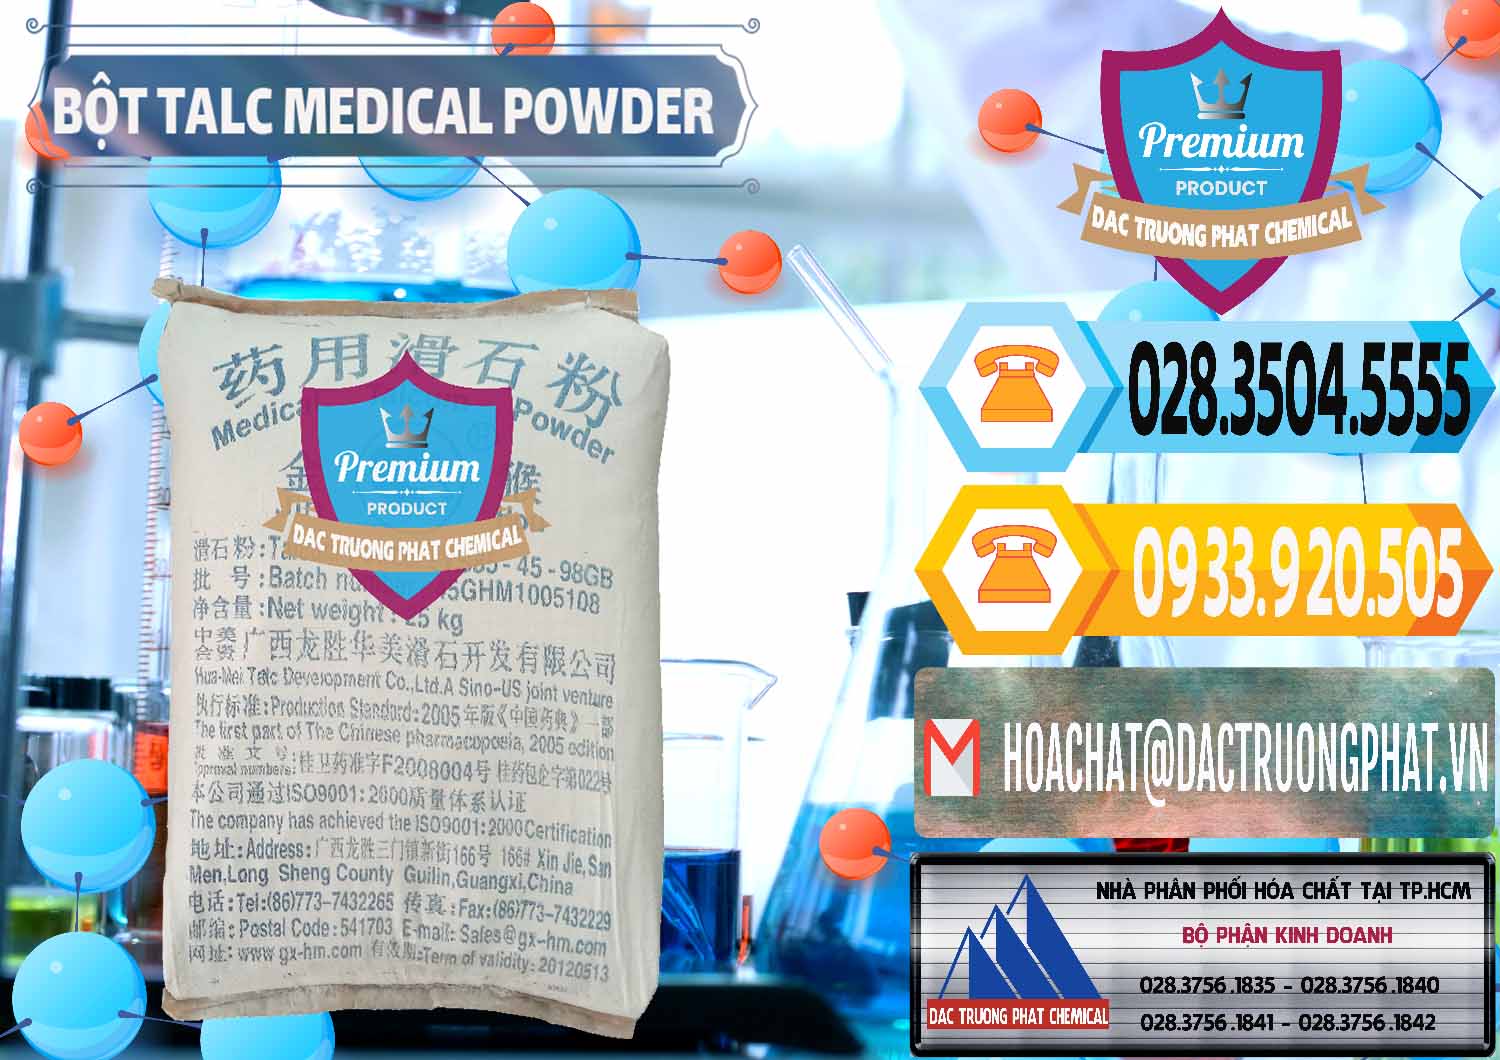 Bán ( cung cấp ) Bột Talc Medical Powder Trung Quốc China - 0036 - Cty cung cấp _ kinh doanh hóa chất tại TP.HCM - hoachattayrua.net